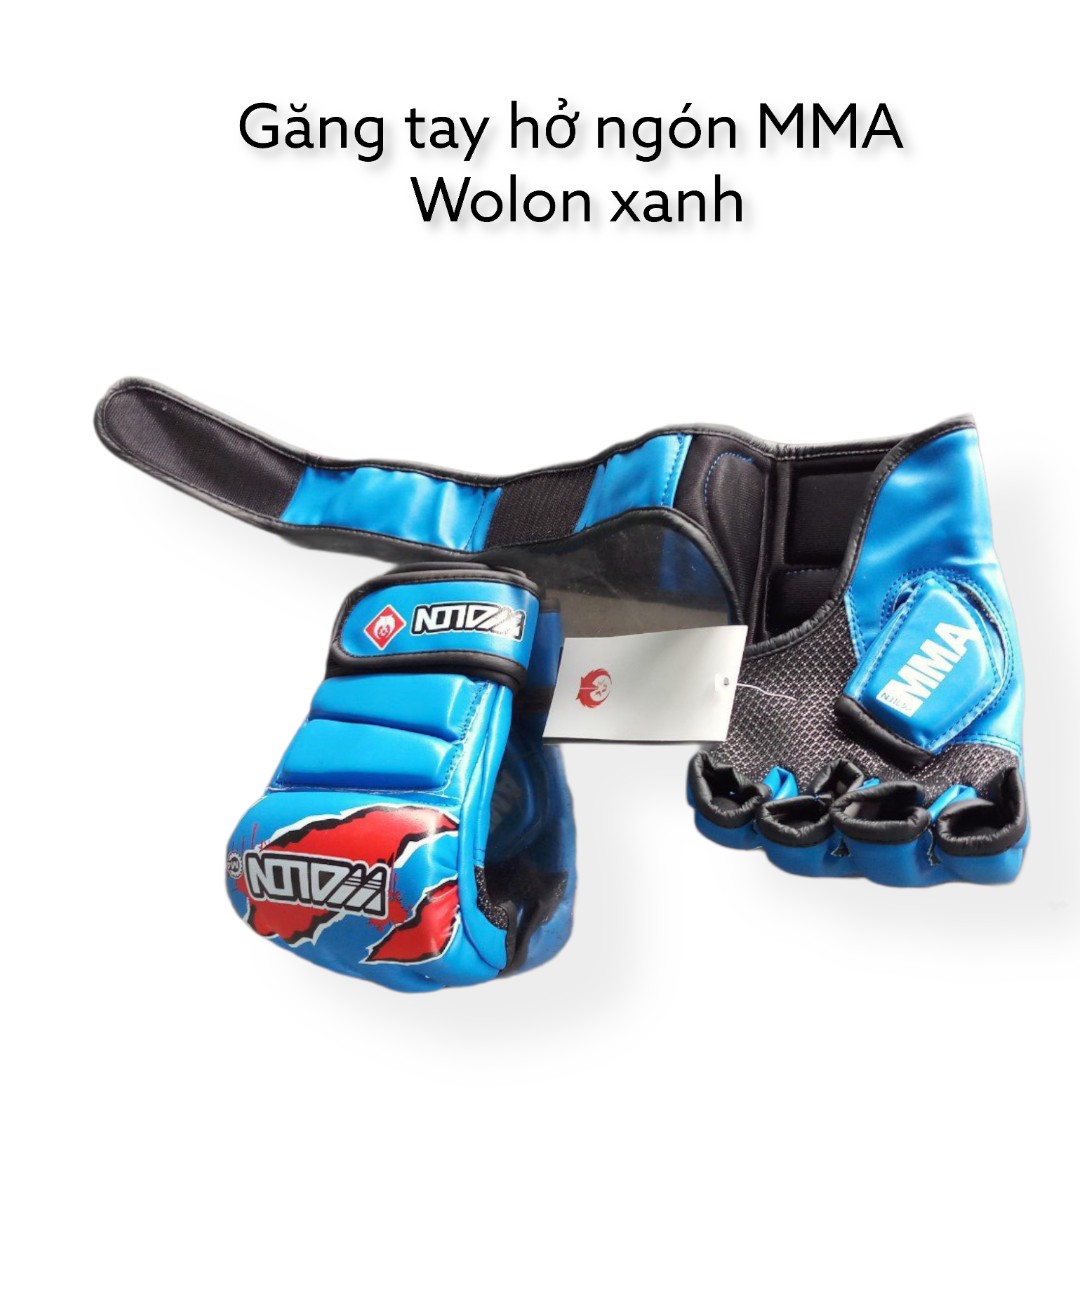 GĂNG HỞ NGÓN MMA WONLON XANH